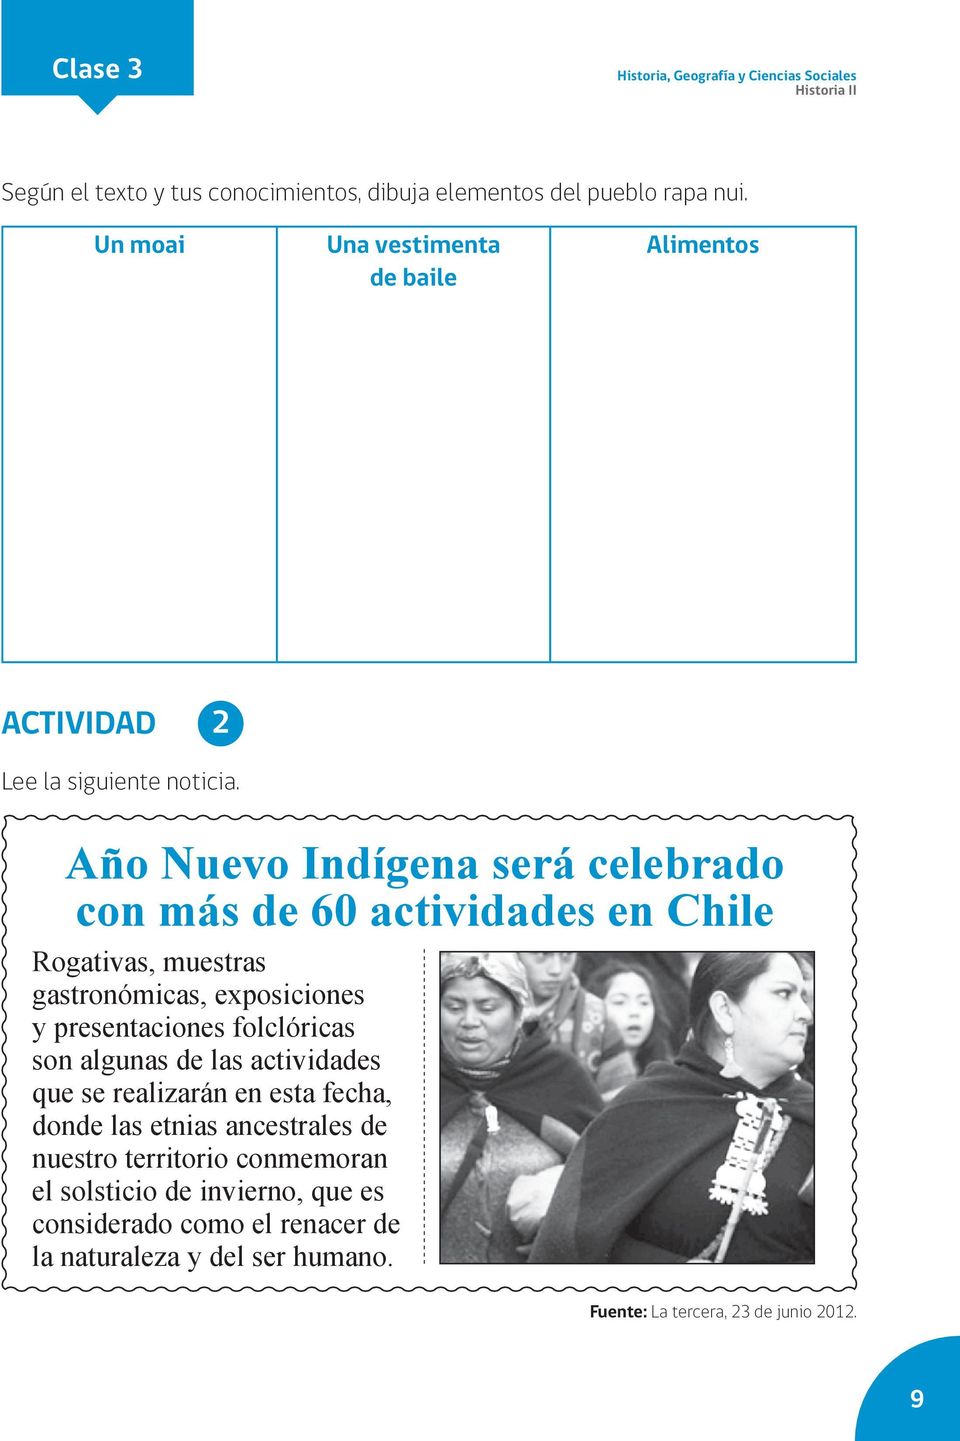 Año Nuevo Indígena será celebrado con más de 60 actividades en Chile Rogativas, muestras gastronómicas, exposiciones y presentaciones